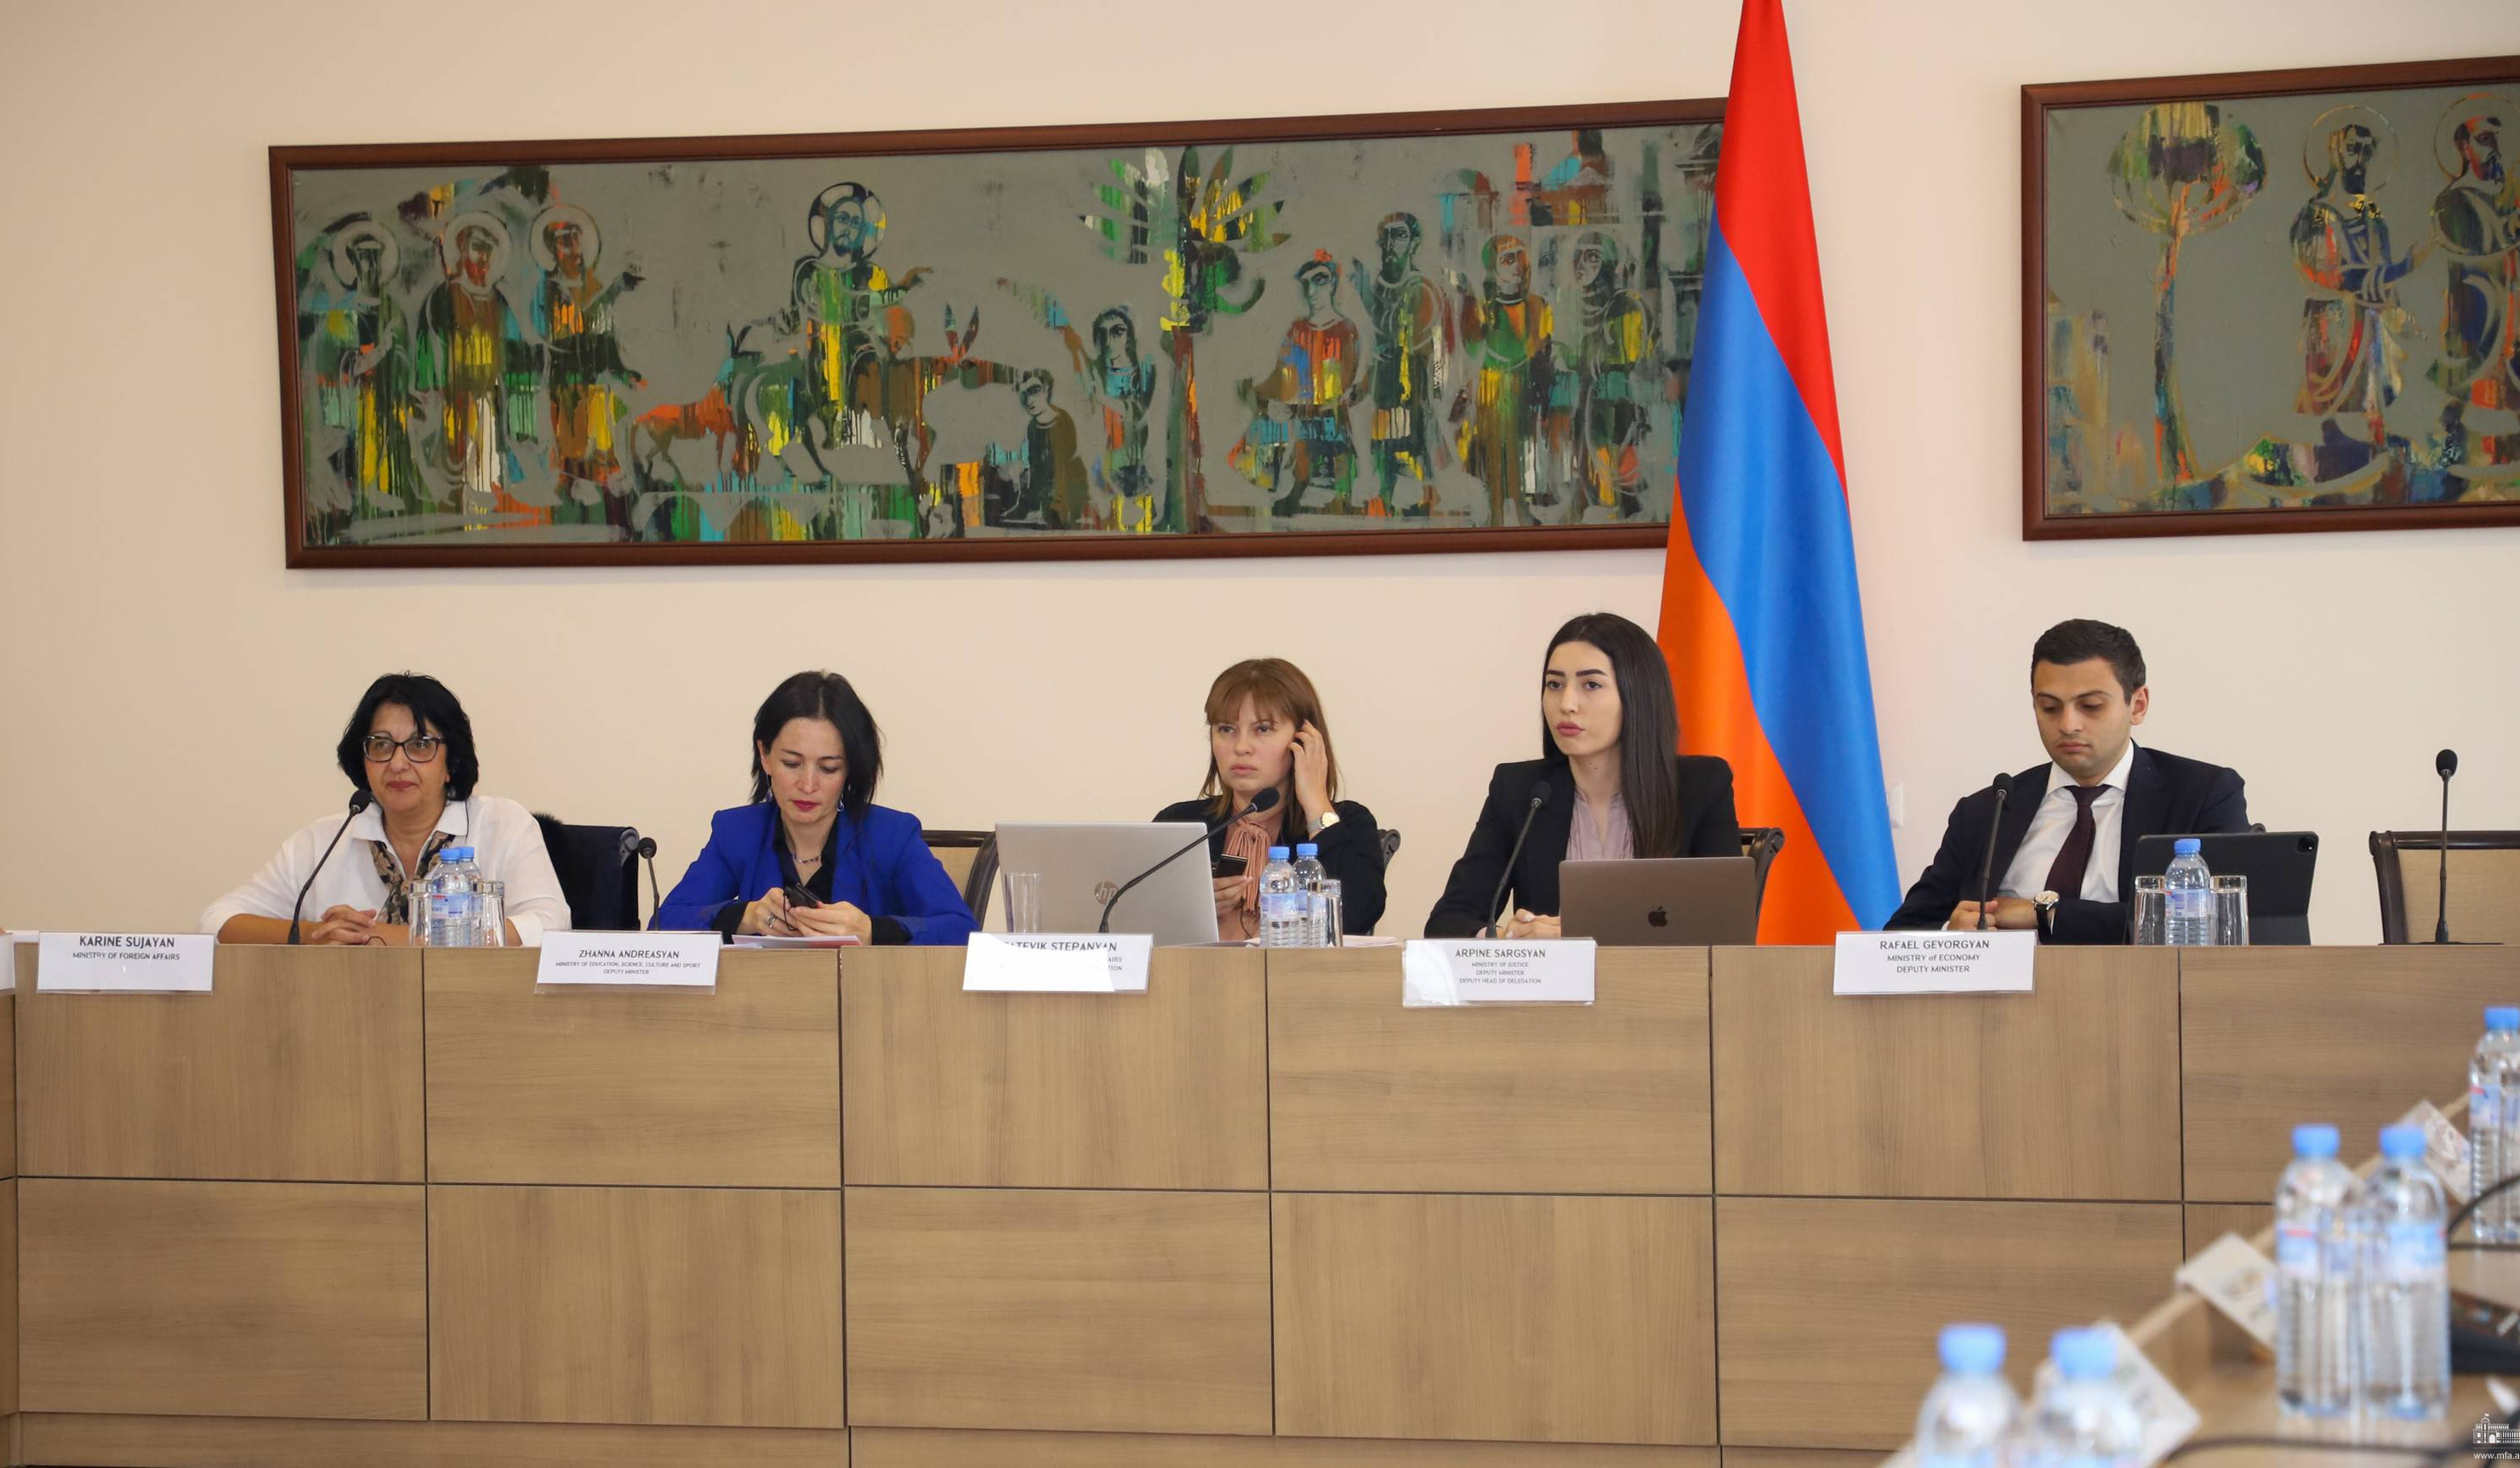 ՀՀ պատվիրակության անդամները ՄԱԿ-ի կոմիտեի ուշադրությունն են հրավիրել Ադրբեջանի ագրեսիայի հետևանքով ստեղծված հումանիտար ճգնաժամի վրա